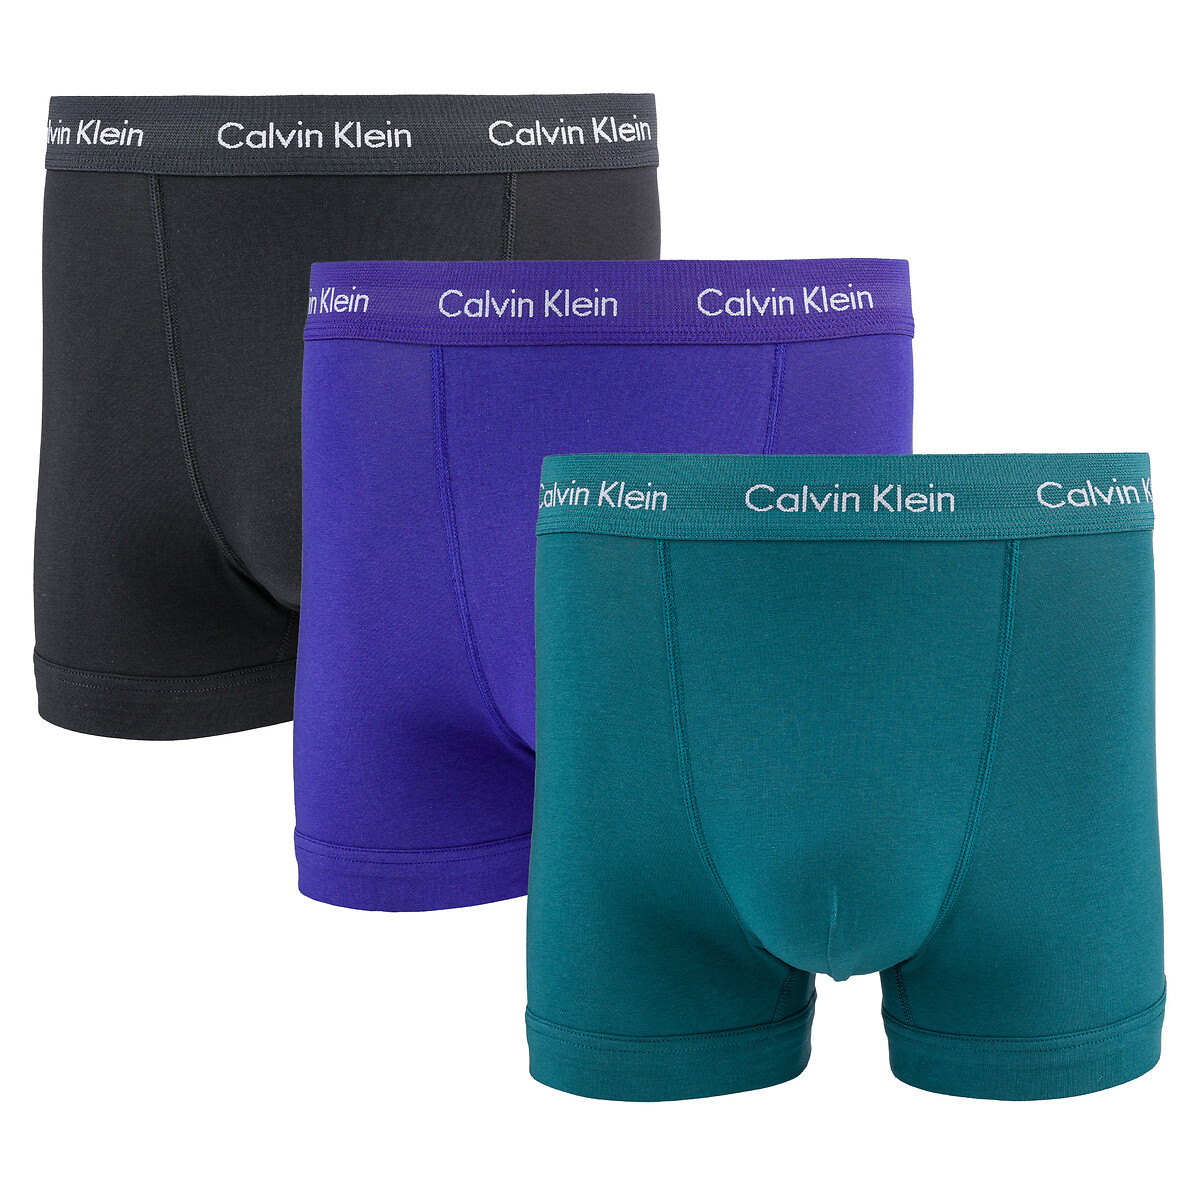 Calvin Klein Underwear Lote de 3 boxers, 2 lisos, 1 estampados